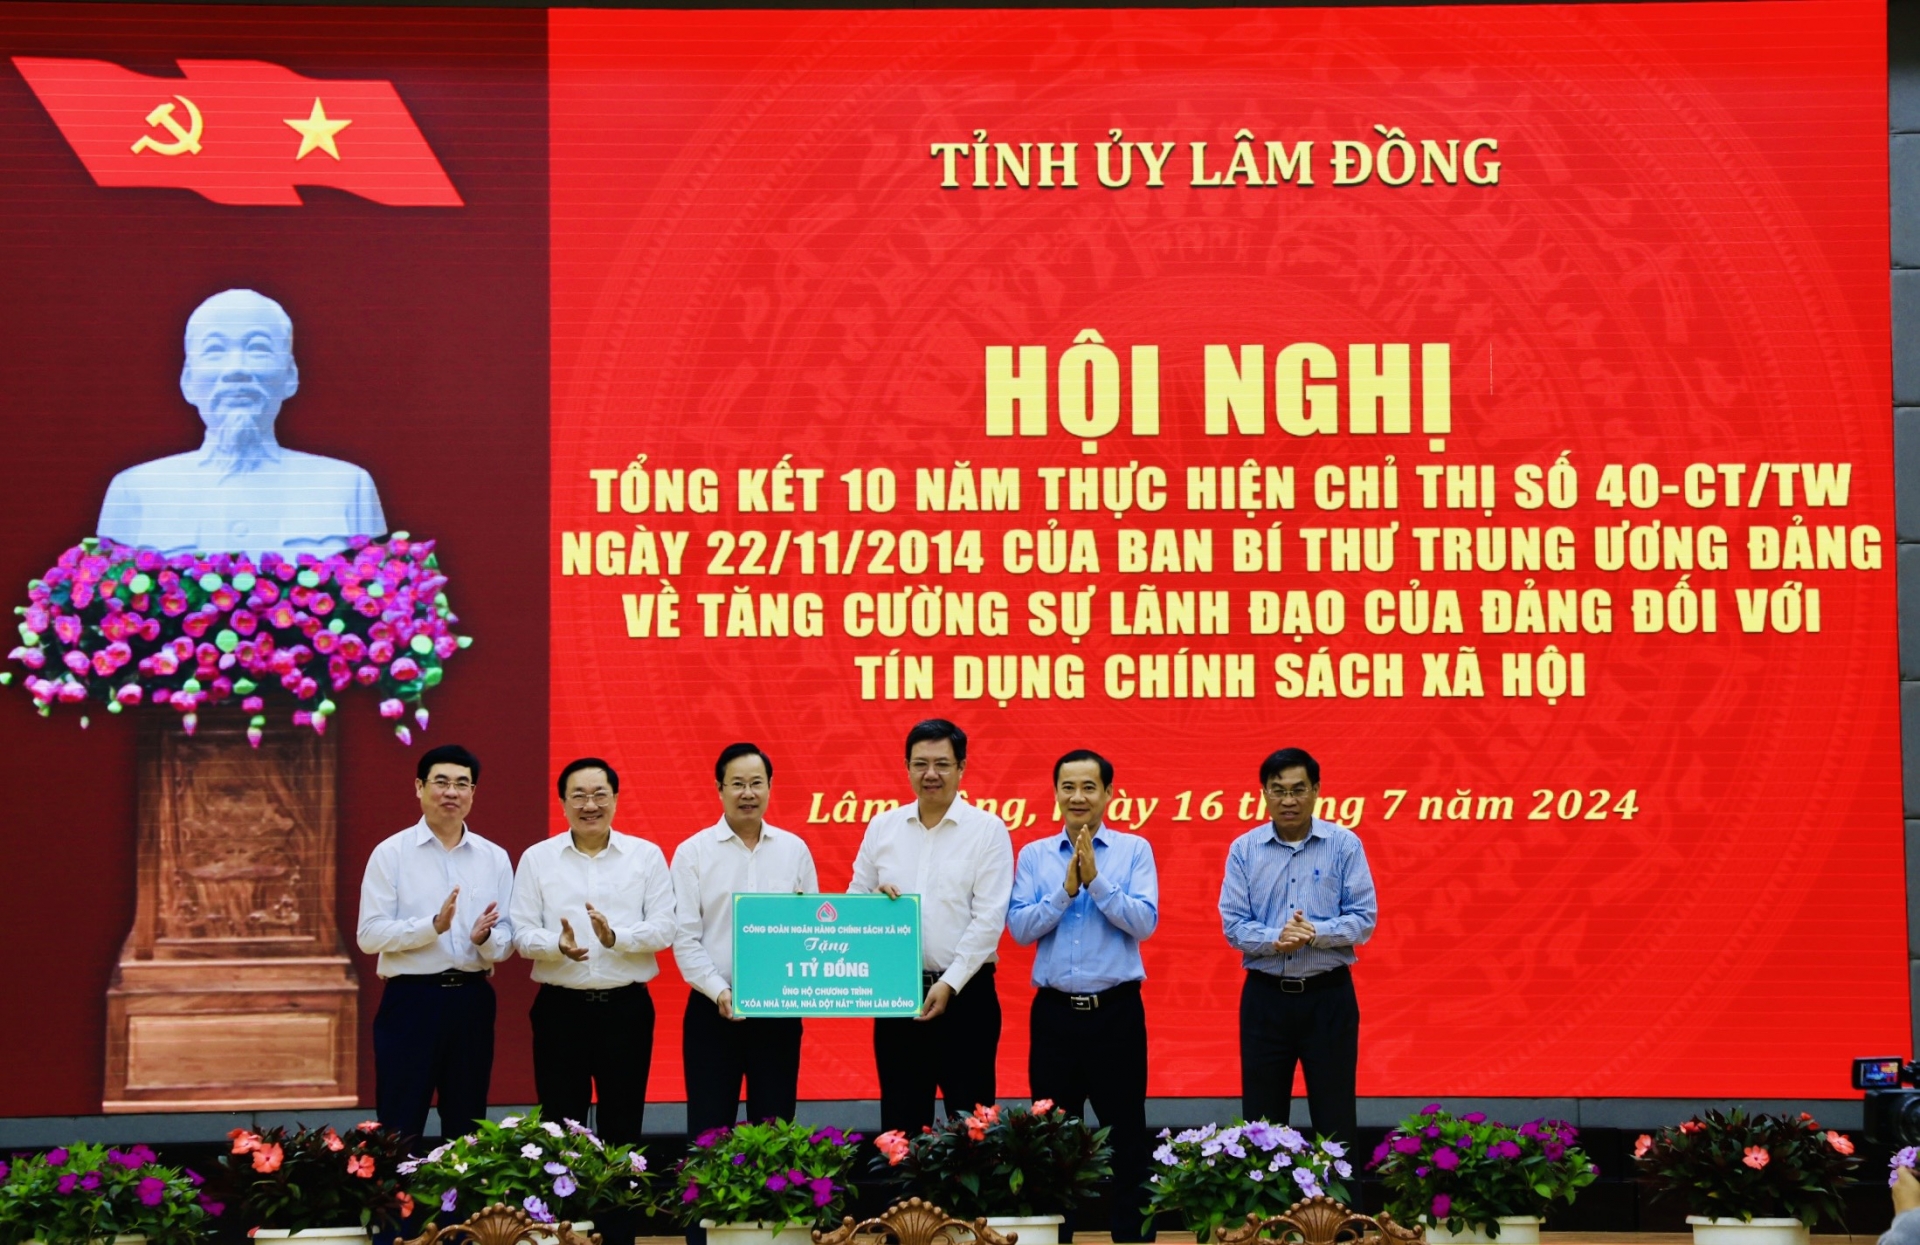 Đại diện Công đoàn NHCSXH trao chương trình an sinh xã hội, ủng hộ chương trình xóa nhà tạm nhà dột nát trên địa bàn tỉnh Lâm Đồng với số tiền 1 tỷ đồng hỗ trợ nhà cho hộ nghèo